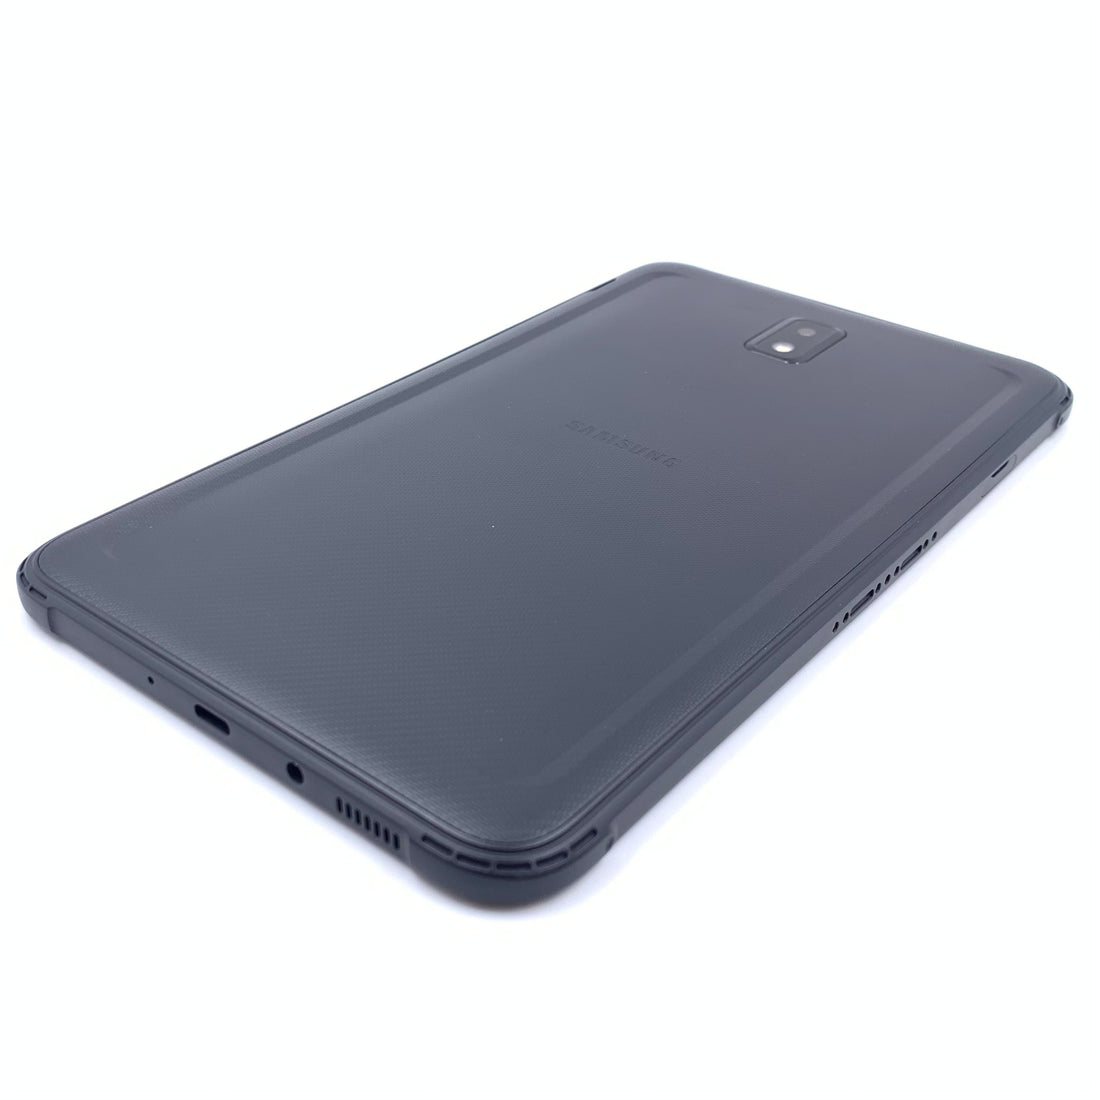 Samsung Galaxy Tab Active Pro SM-T545 64GB (Reacondicionado)